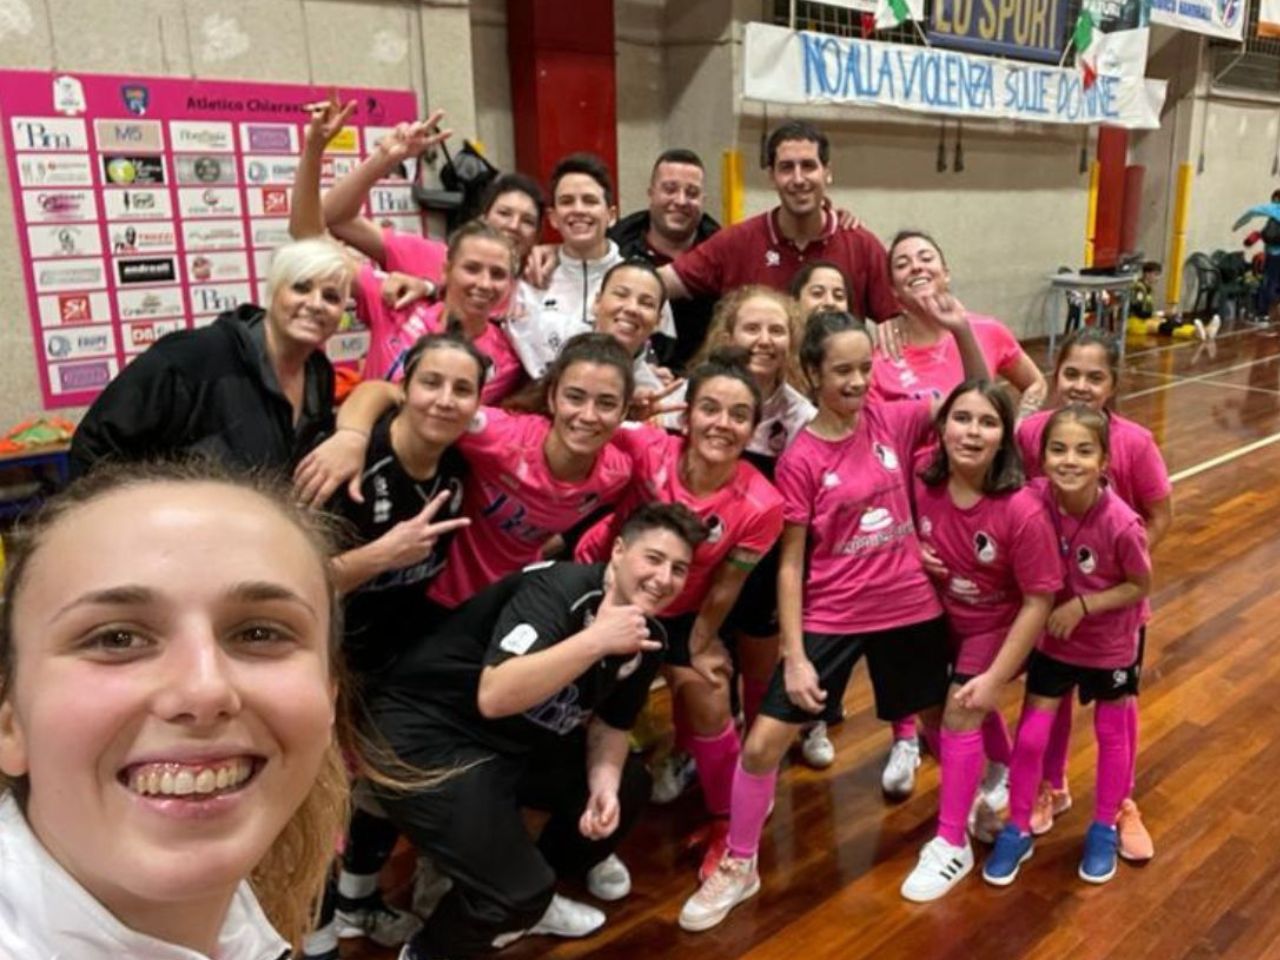 Rotondo successo per le ragazze dell’Atletico Chiaravalle, contro Taranto finisce 6-0